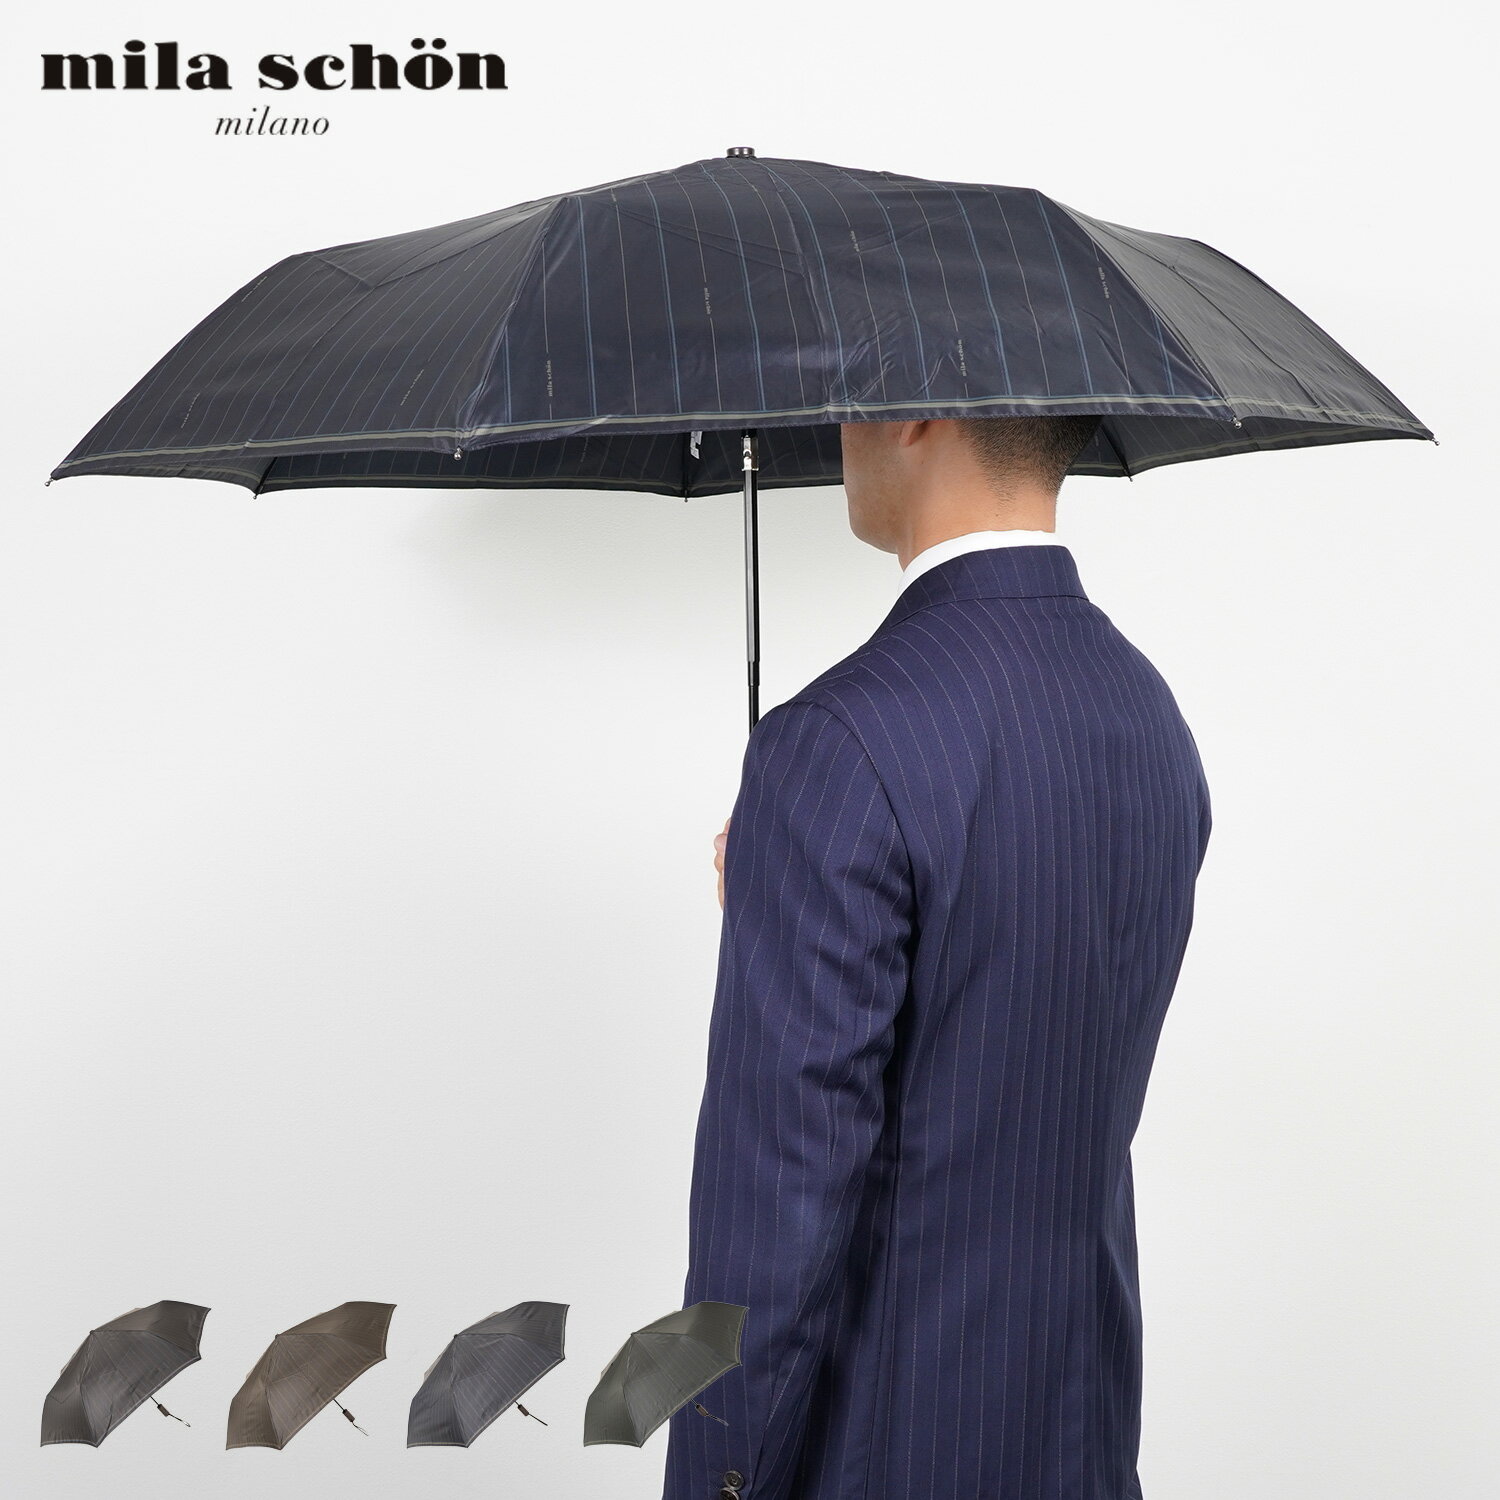 商品説明 【伝統を超える巧みなモダニズムでファッションシーンをリードする mila schon】 モダンなストライプ柄がプリントされたミラショーン(mila schon)の折り畳み傘。ダブルジャンプ式の開閉方法で、簡単に開くことができます。2色のストライプとロゴが傘全体にプリントされ、フォーマルにもカジュアルにも使いこなせるアイテム。雨の日に使えば、その日のコーディネートをワンランクあげてくれるアイテムです。 ブランド名 / 商品名 mila schon ミラショーン / FOLDING UMBRELLA 0042-15 カラー ブラック：BLACK(15) ダークブラウン：DARK BROWN(25) ディープブルー：DEEP BLUE(75) ダークグリーン：DARK GREEN(65) 素材 / 仕様 ポリエステル 100% 開閉機構：ダブルジャンプ式 生産国 CHINA サイズ 親骨の長さ：60cm×全長(収納時)：31.2cm×全長(使用時)：60cm×直径：97cm×持ち手の長さ：7.1cm こちらの商品は、メーカー公式の採寸基準で計測しています。 ご購入前に必ずお読みください サイズ・仕様について 平置きして採寸したサイズになります。商品によっては若干の誤差が生じてしまう場合がございます。また、商品やブランド等によりサイズが異なります。（単位はcmになります。） カラーについて 個体ごとに若干の誤差がある場合がございます。商品の画像は、できるだけ商品に近いカラーにて、掲載をしております。お客様のモニターの設定により、色味に違いが発生してしまう場合もございます。あらかじめご了承ください。 予約商品の納期発送目安について 予約商品の納期発送目安は、以下の通りになります。 上旬：1日-10日頃発送予定 中旬：11日-20日頃発送予定 下旬：21日-末日頃発送予定 ※目安になりますので、日程が多少前後する場合があります。 類似商品はこちらmila schon FOLDING UMBR6,600円mila schon LONG UMBRELL6,600円mila schon FOLDING UMBR6,600円mila schon FOLDING UMBR6,600円mila schon LONG UMBRELL6,600円mila schon FOLDING UMBR6,600円mila schon FOLDING UMBR6,600円mila schon LONG UMBRELL6,600円mila schon LONG UMBRELL6,600円新着商品はこちら2024/6/1new balance ニューバランス 20019,800円2024/6/1EAST BOY マカロンデイパック イースト4,730円2024/6/1NICECLAUP マロンデイパック ナイスク4,950円再販商品はこちら2024/6/2NANGA SUB AURORA WINTER6,650円2024/6/2GRAMICCI THERMAL MOC グラ7,500円2024/6/2SUBU BELT スブ サンダル スリッパ 6,700円2024/06/02 更新 類似商品はこちらmila schon FOLDING UMBR6,600円mila schon LONG UMBRELL6,600円mila schon FOLDING UMBR6,600円新着商品はこちら2024/6/1new balance ニューバランス 20019,800円2024/6/1EAST BOY マカロンデイパック イースト4,730円2024/6/1NICECLAUP マロンデイパック ナイスク4,950円再販商品はこちら2024/6/2NANGA SUB AURORA WINTER6,650円2024/6/2GRAMICCI THERMAL MOC グラ7,500円2024/6/2SUBU BELT スブ サンダル スリッパ 6,700円